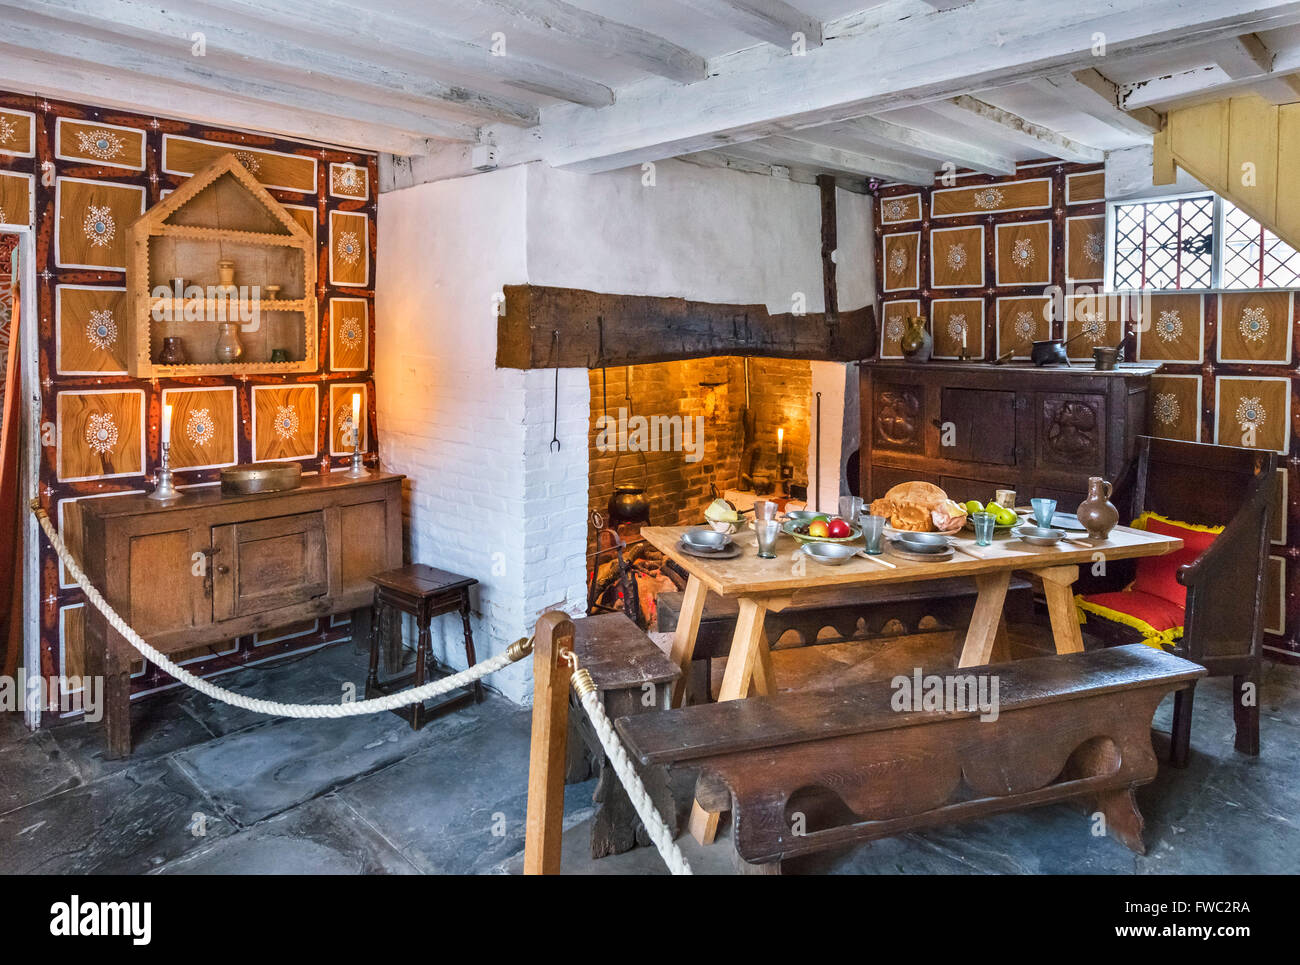 La cuisine est dans le lieu de naissance de Shakespeare, Stratford-upon-Avon, England, UK Banque D'Images